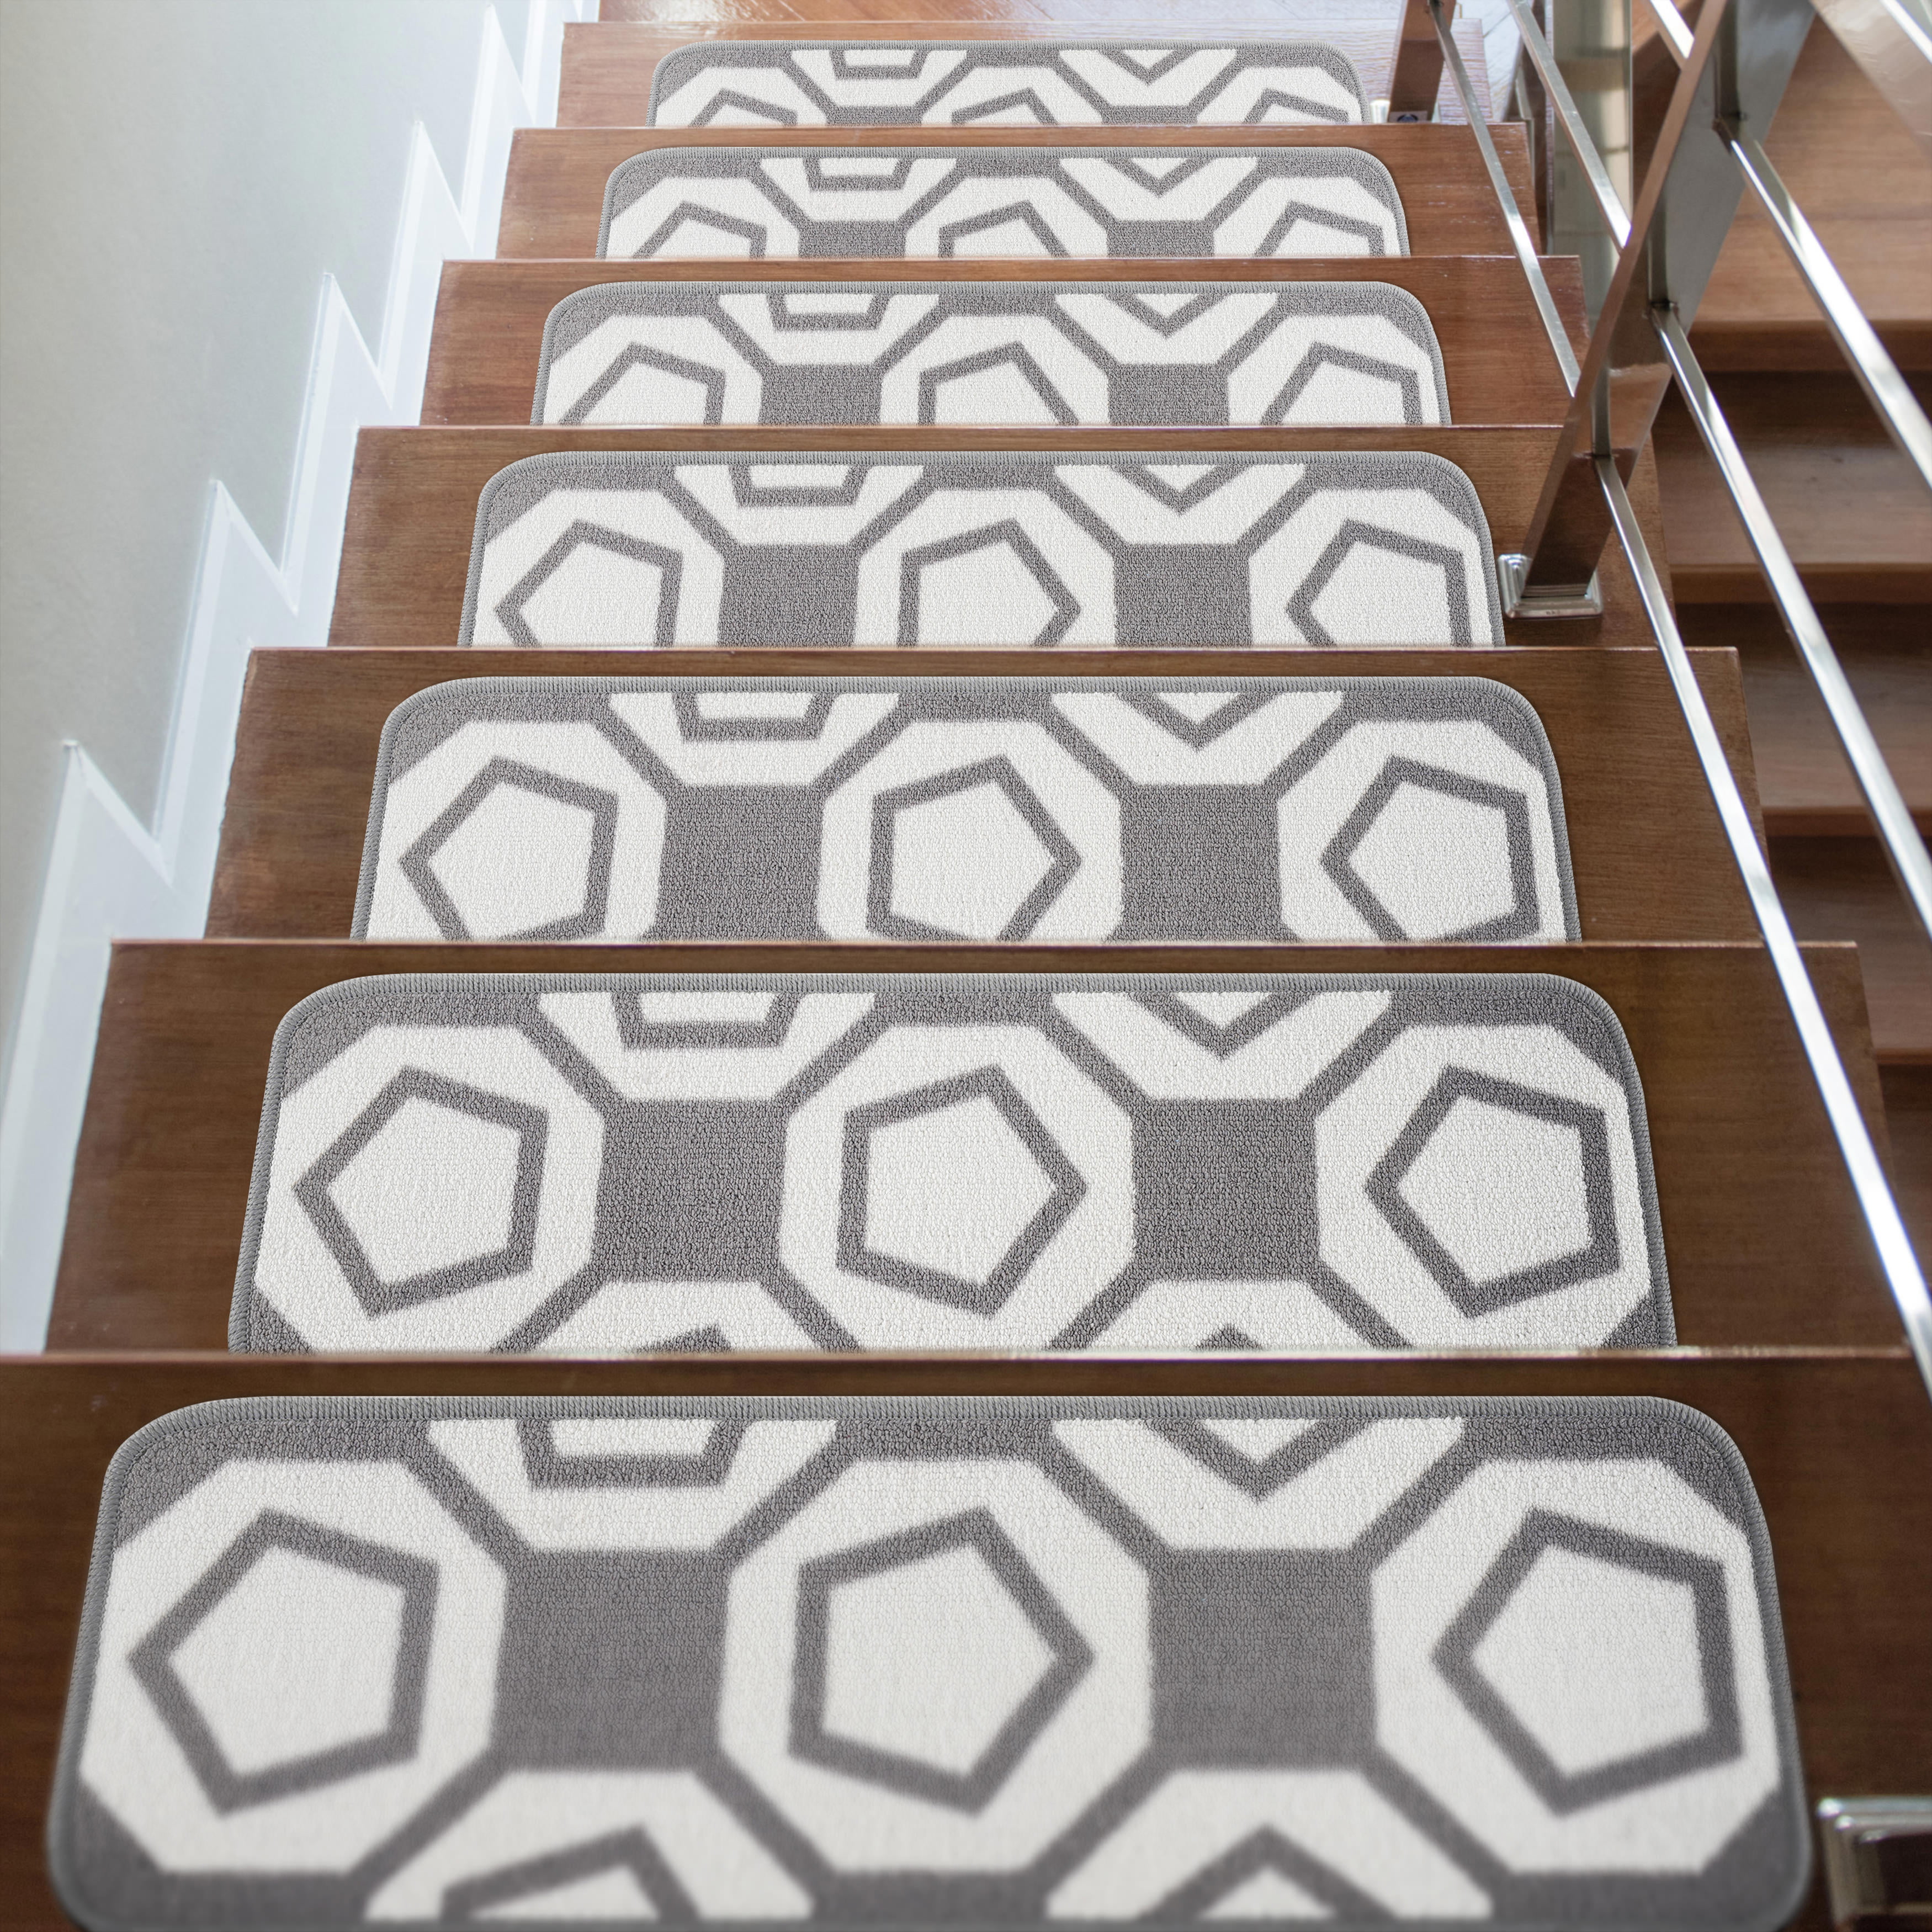 Details about   6-Pcs Non-Slip Regal Stair Treads Rubber Step Mats 9.75"X29.75" Decorative Black 